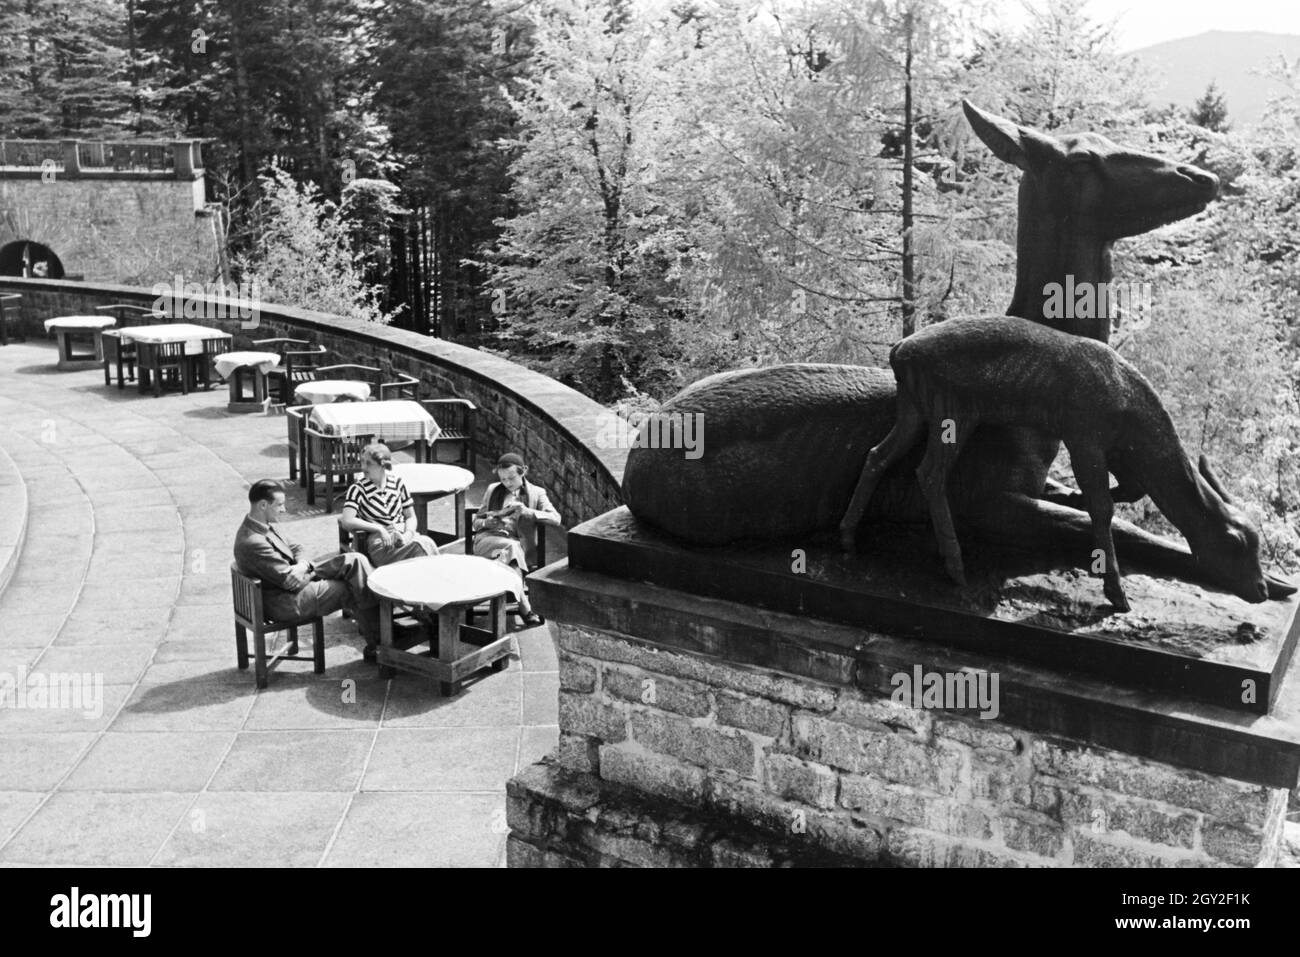 Ein Ausflug zum Schloss Bühlerhöhe im Schwarzwald, Deutsches Reich 1930er Jahre. A trip to Bühlerhöhe Castle in the Black Forest, Germany 1930s. Stock Photo